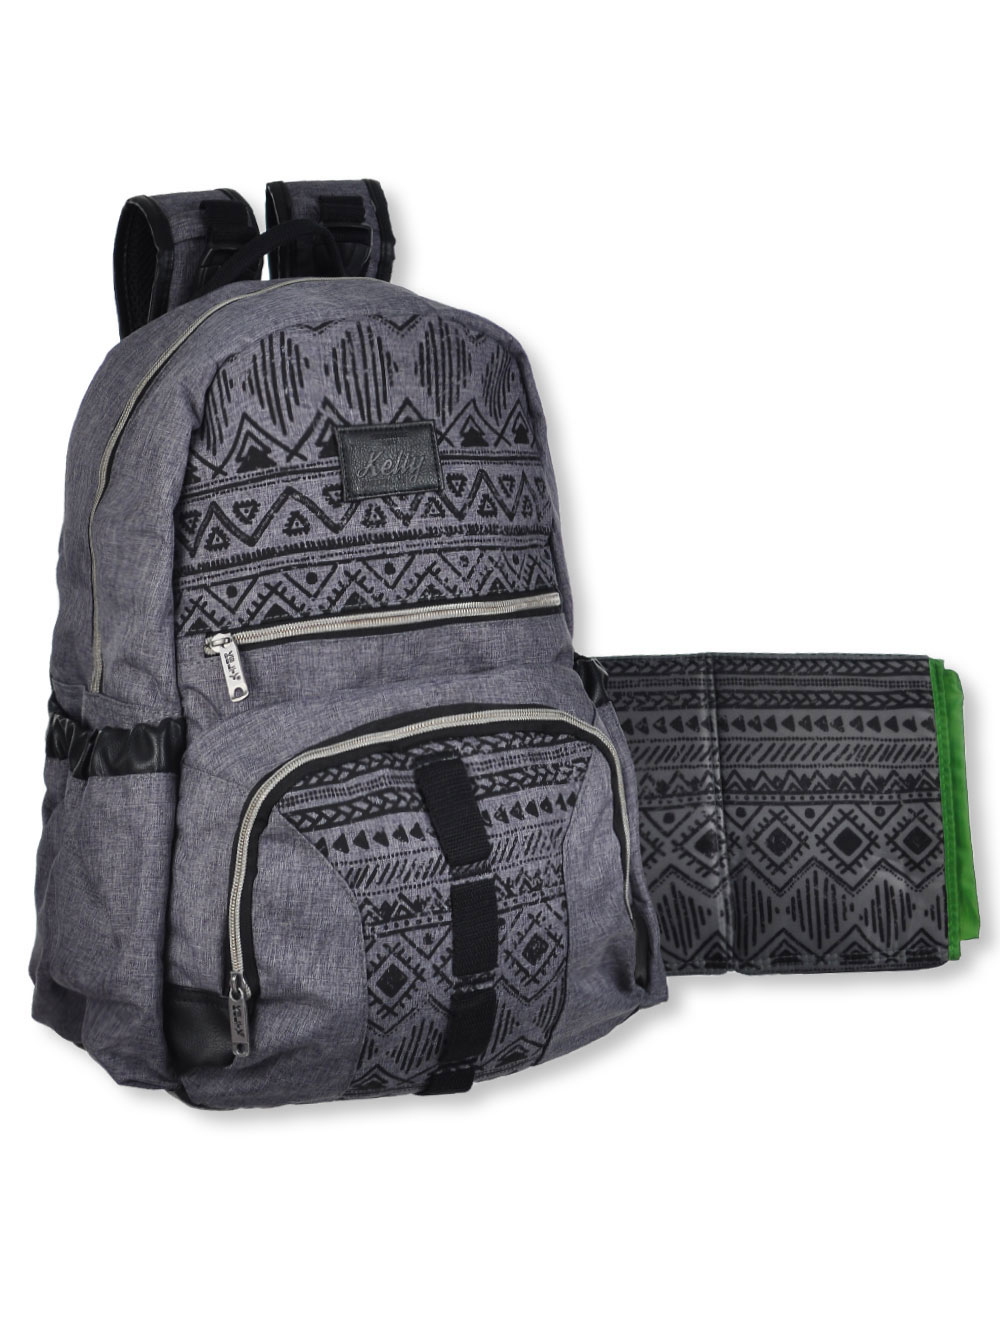 kelty super cooler backpack diaper bag